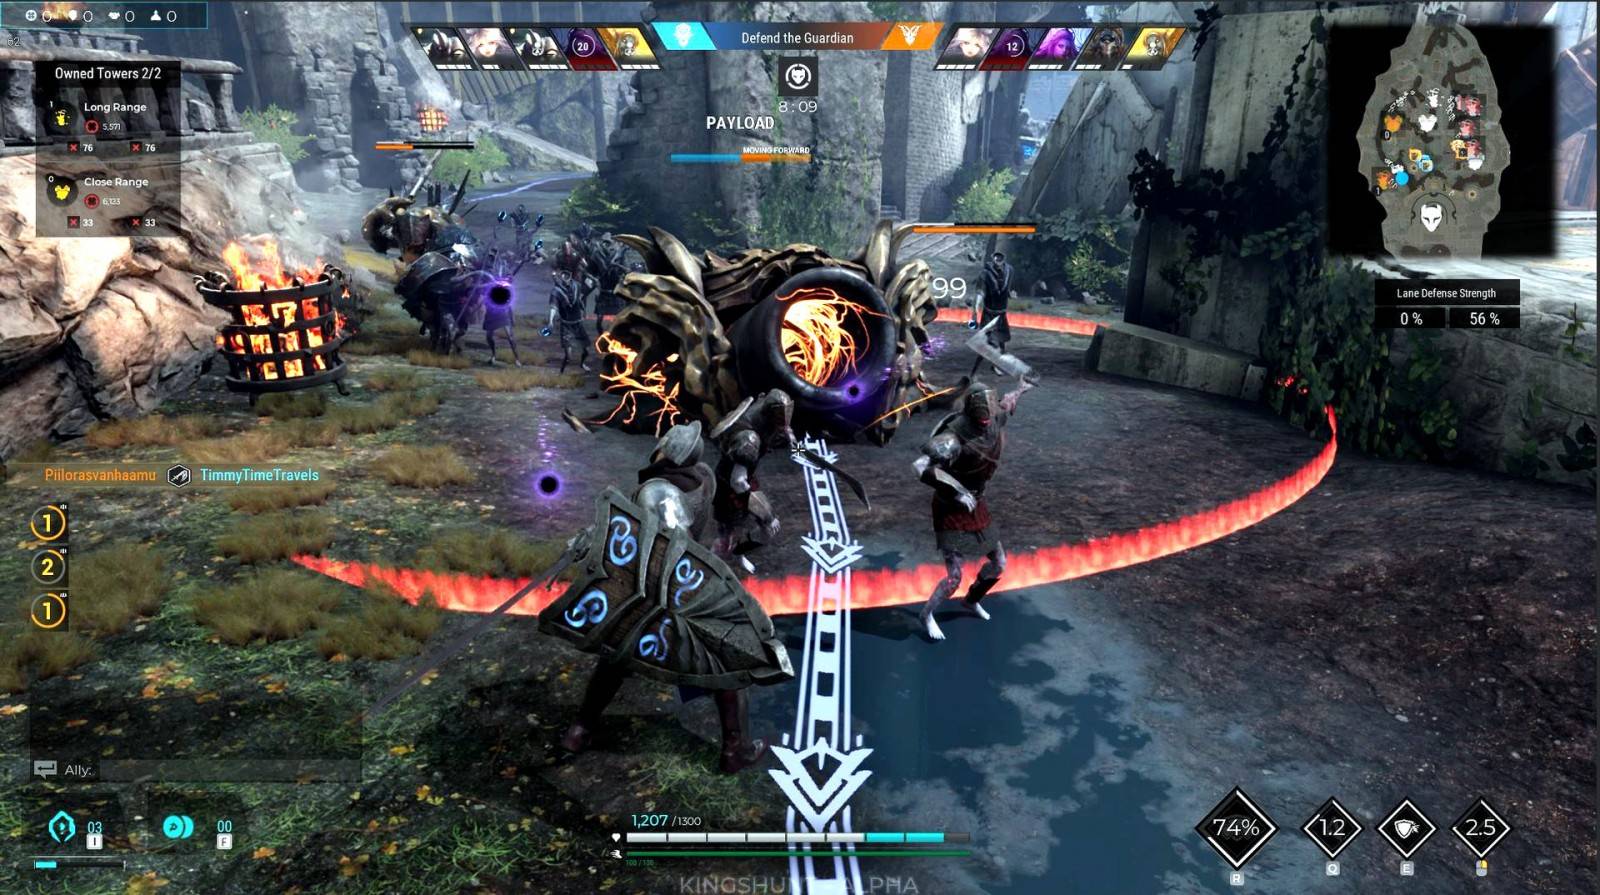 Kingshunt: El Multijugador Online Inicia su Beta Abierta en Steam 4